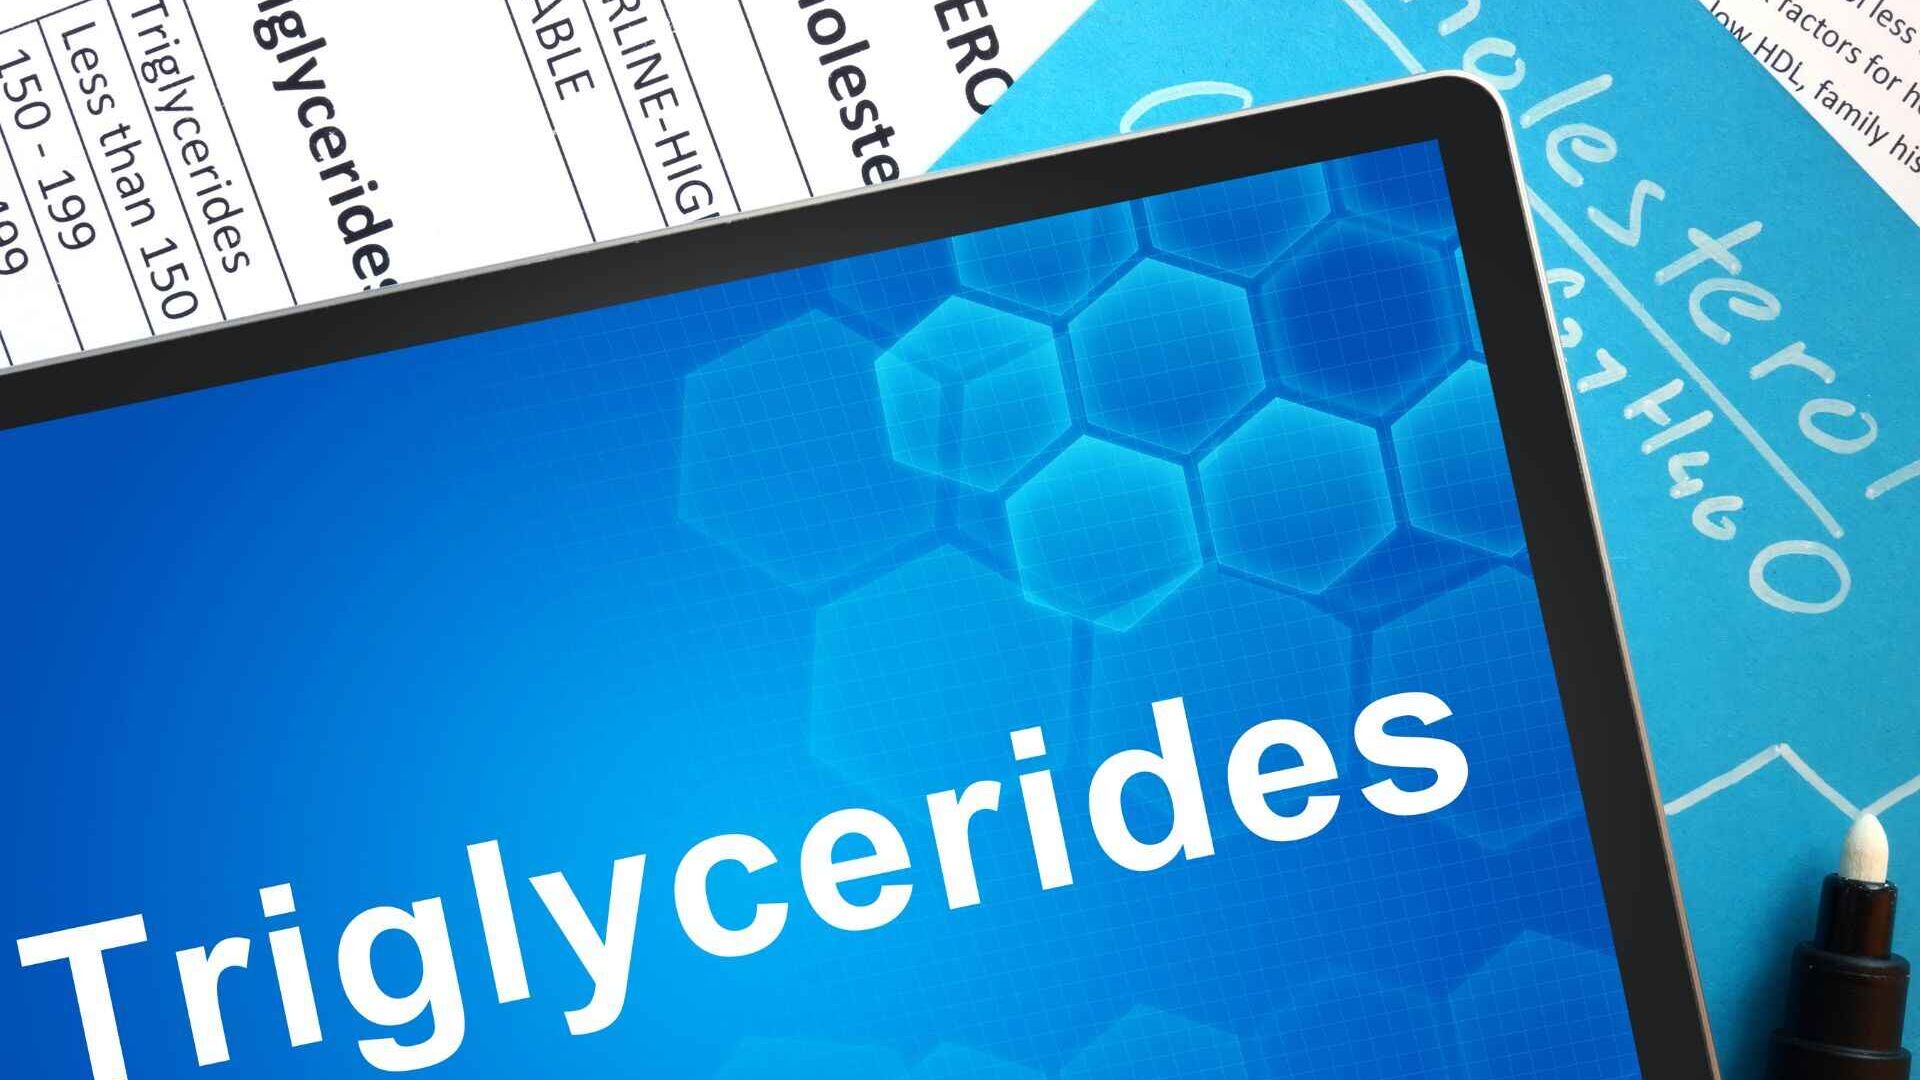 Trigliceridi: cause, sintomi e rimedi in un'ottica innovativa